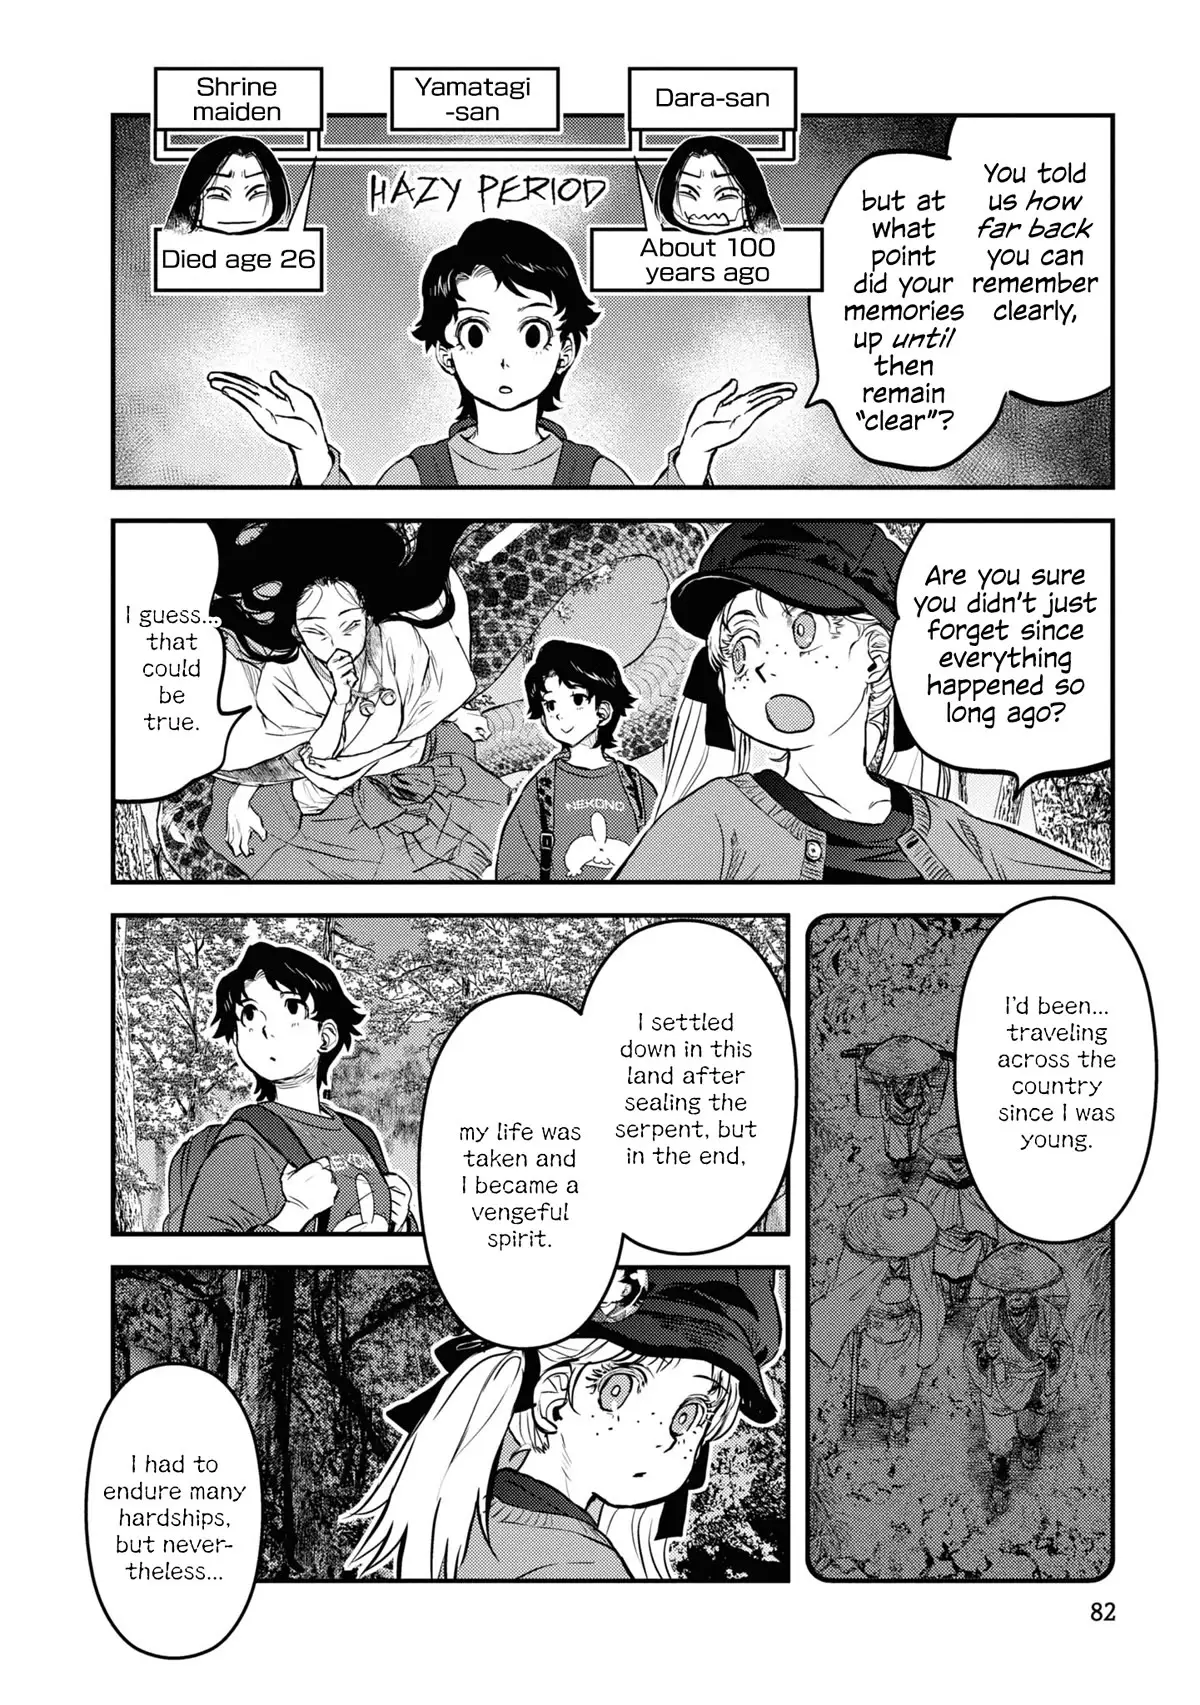 Reiwa No Dara-San - 21 page 12-695d799e